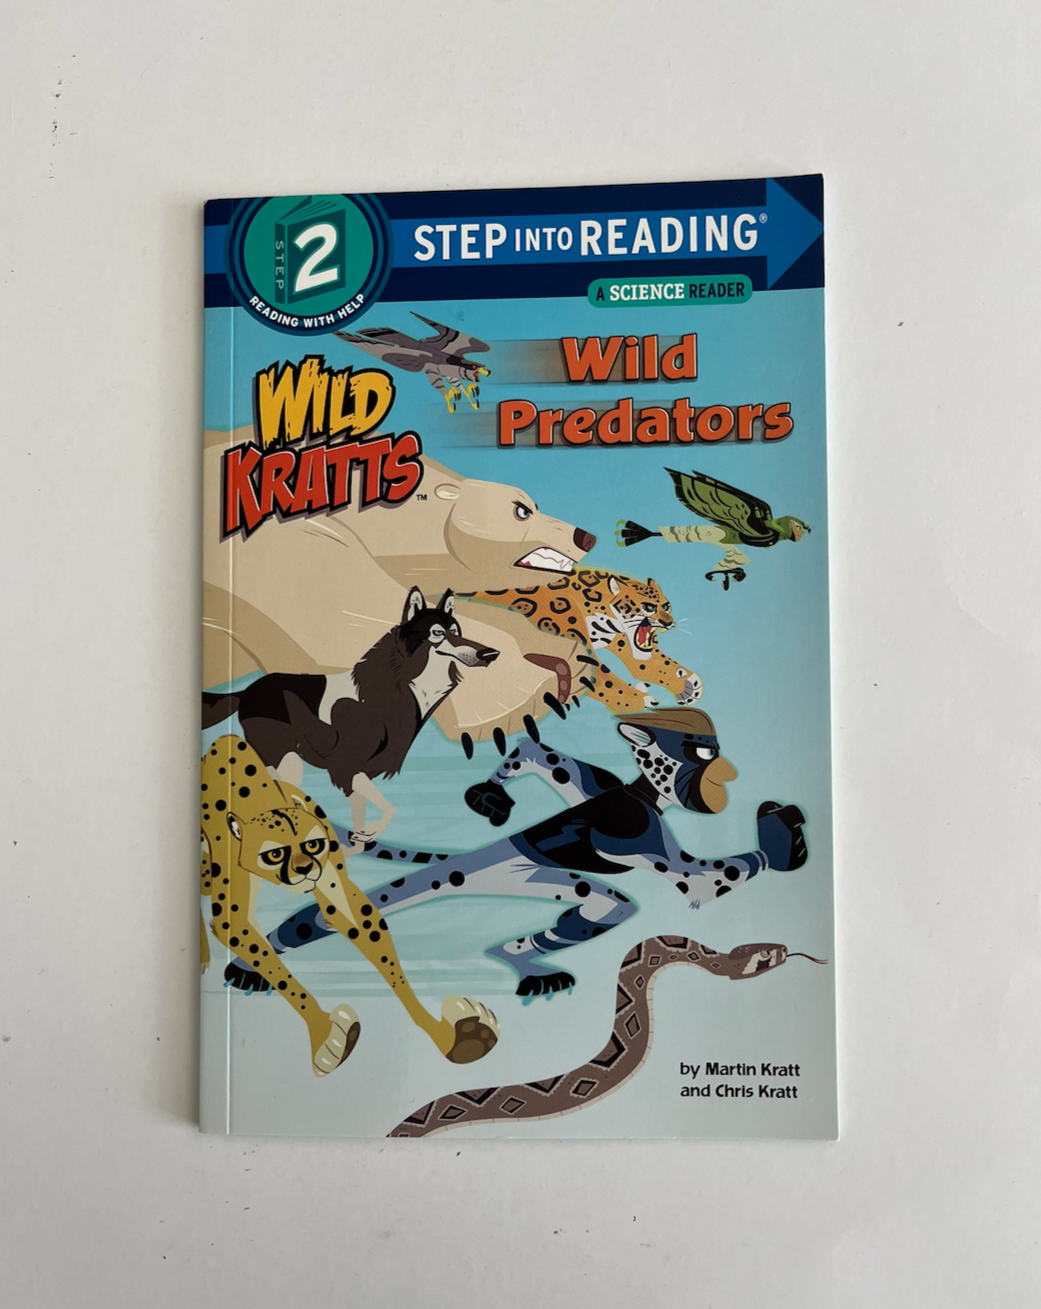 Wild Kratts: Wild Predators by the Kratt Brothers